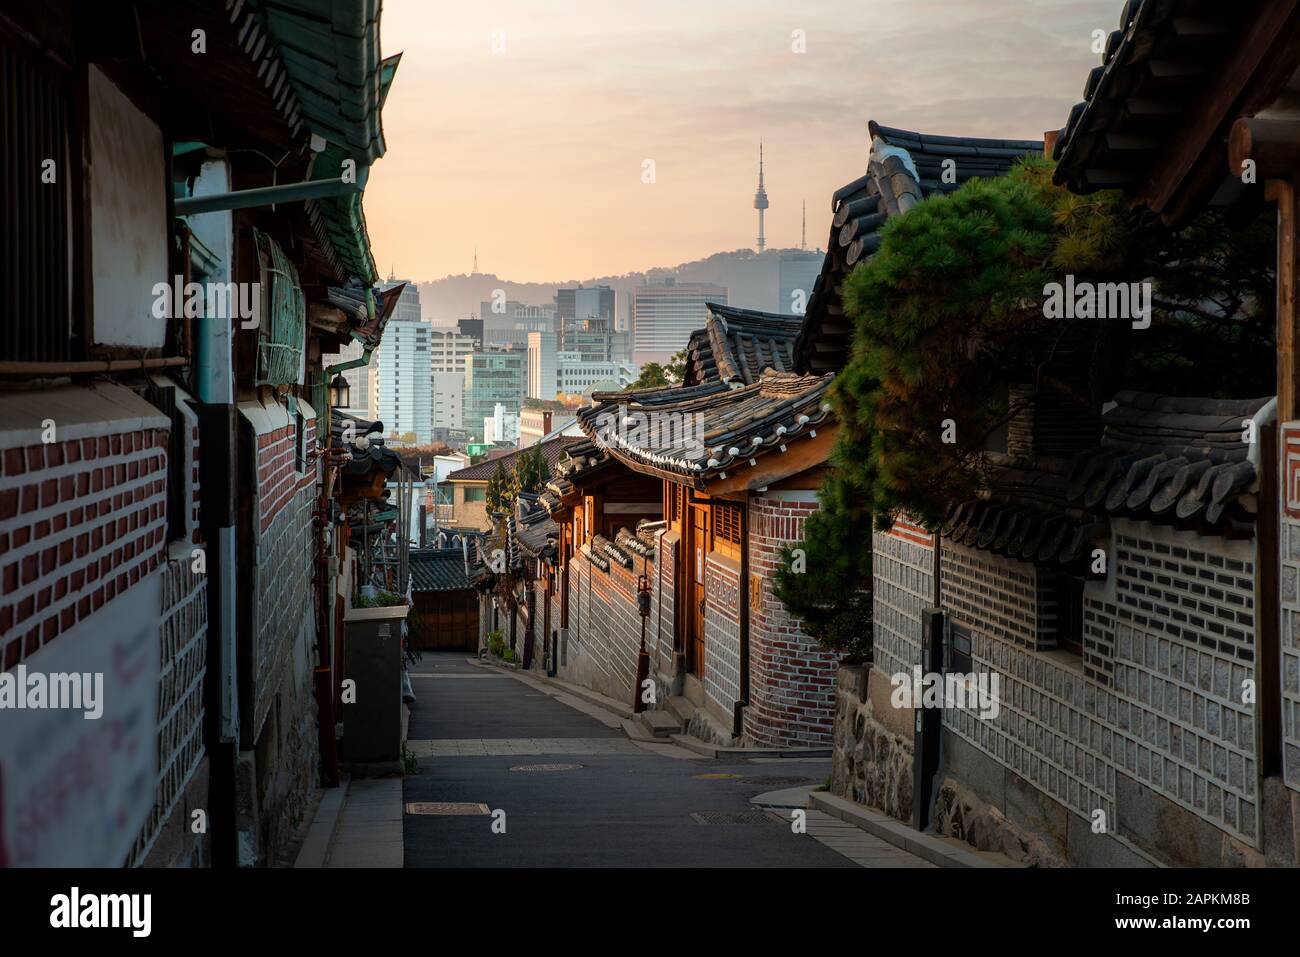 Architecture traditionnelle de style coréen au village de Bukchon Hanok avec la Tour N de Séoul en arrière-plan à Séoul, en Corée du Sud. Tourisme asiatique, bâtiment d'histoire Banque D'Images